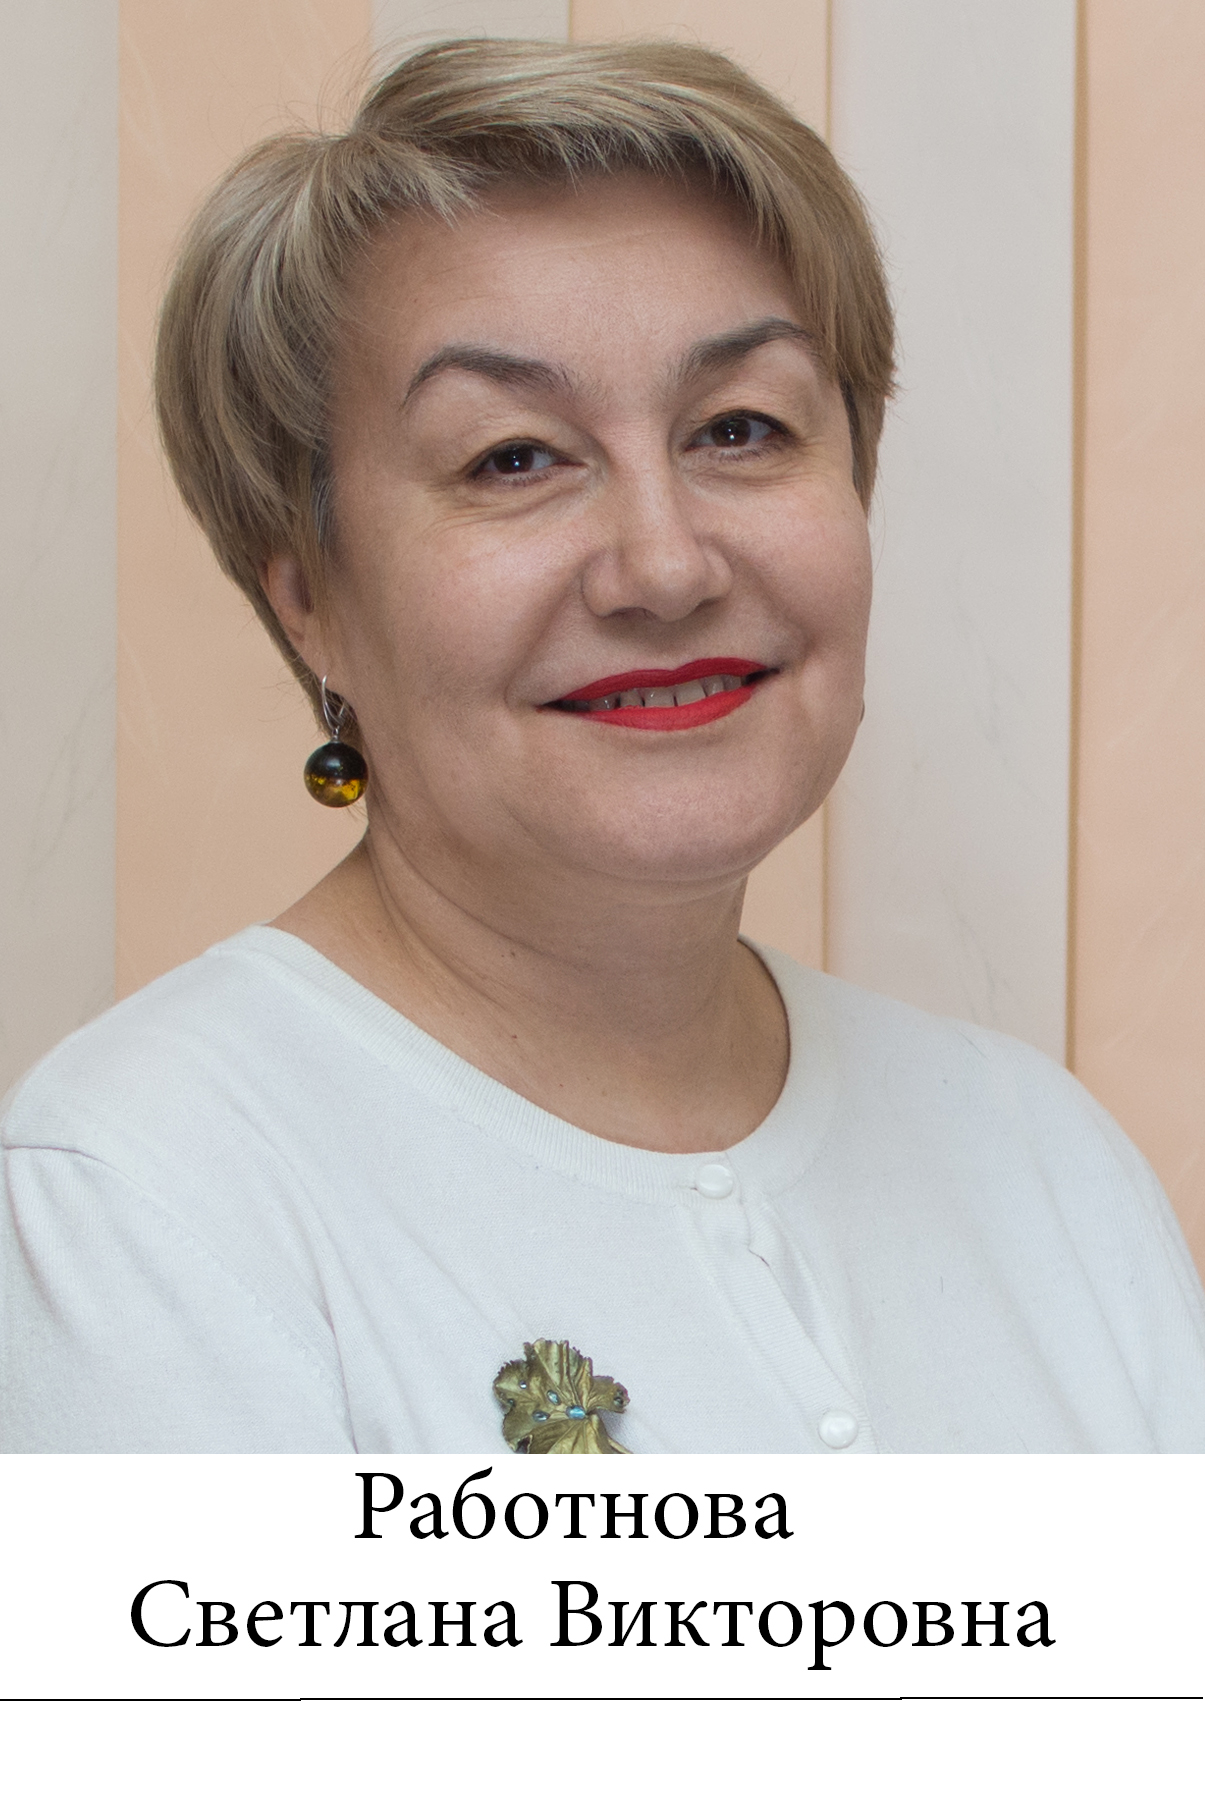 Работнова Светлана Викторовна.